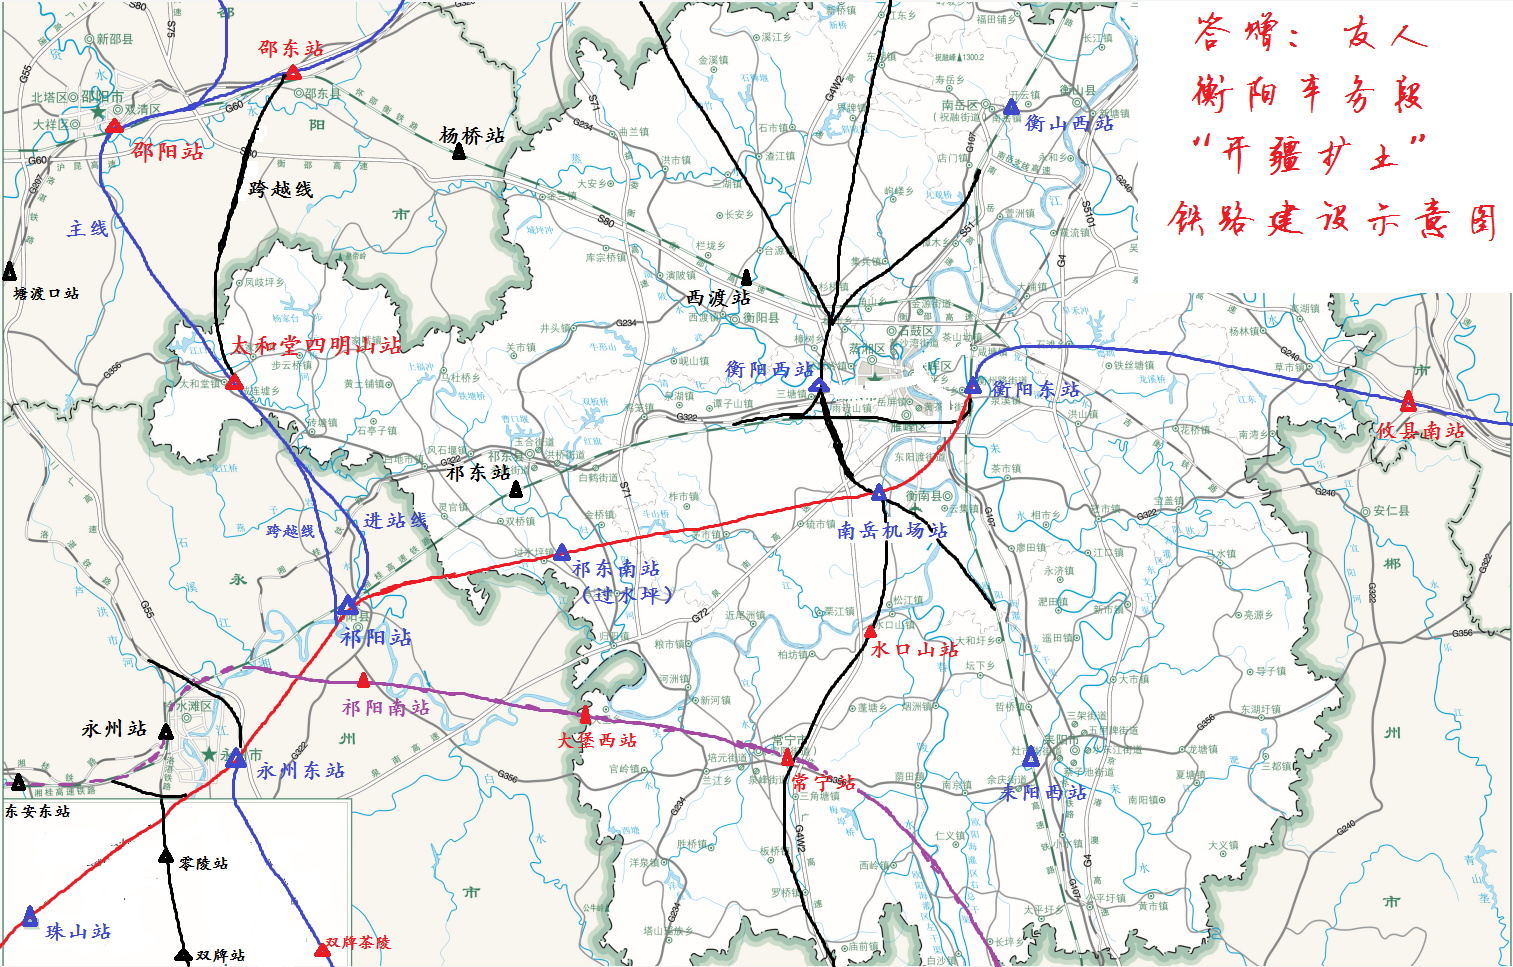 衡阳地区,永州北部地区高速铁路总体规划图! 封规划之